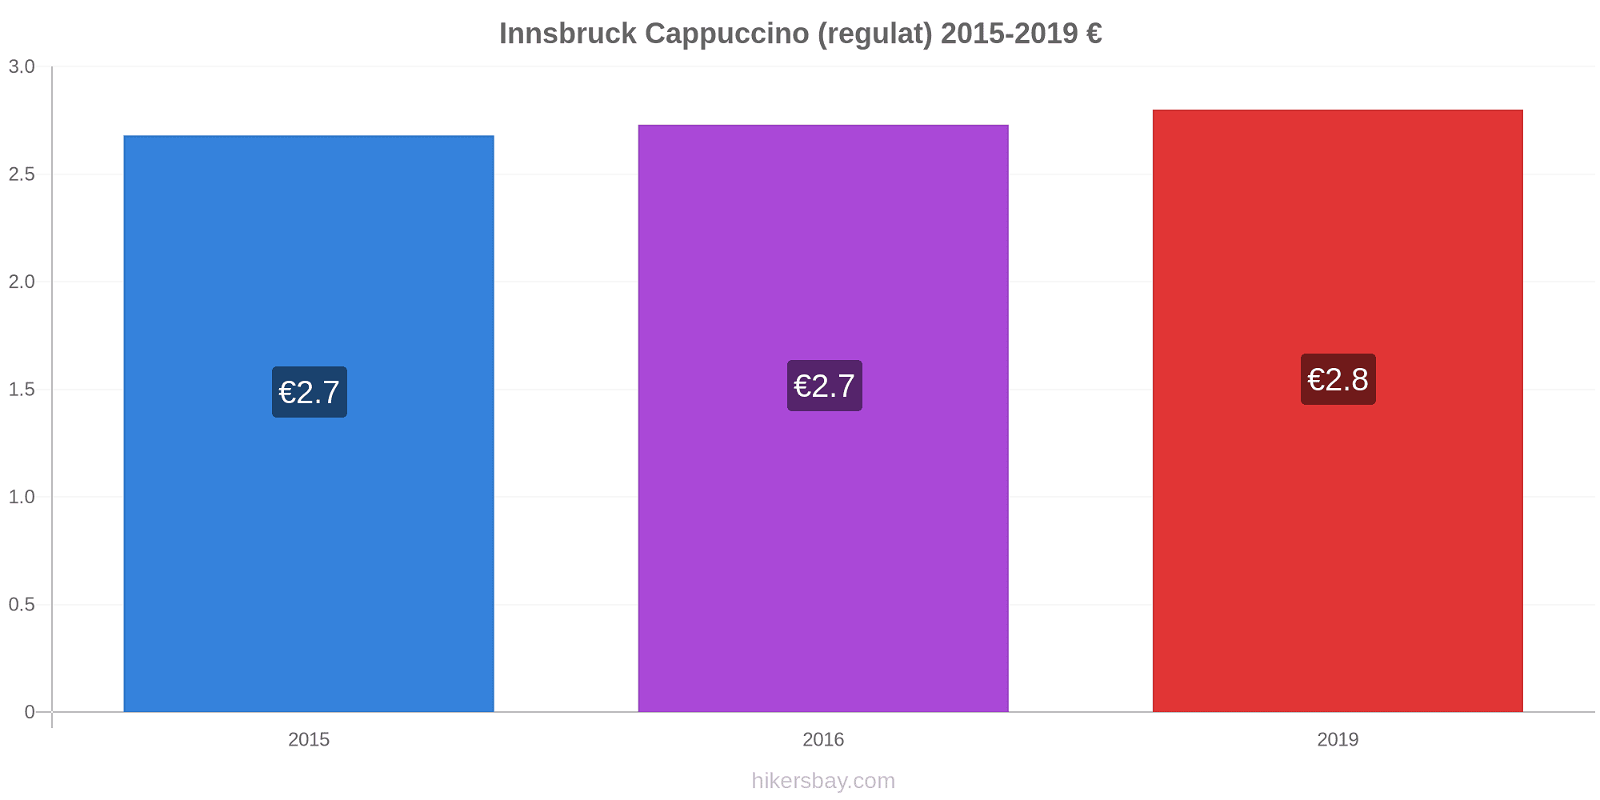 Innsbruck modificări de preț Cappuccino (regulat) hikersbay.com